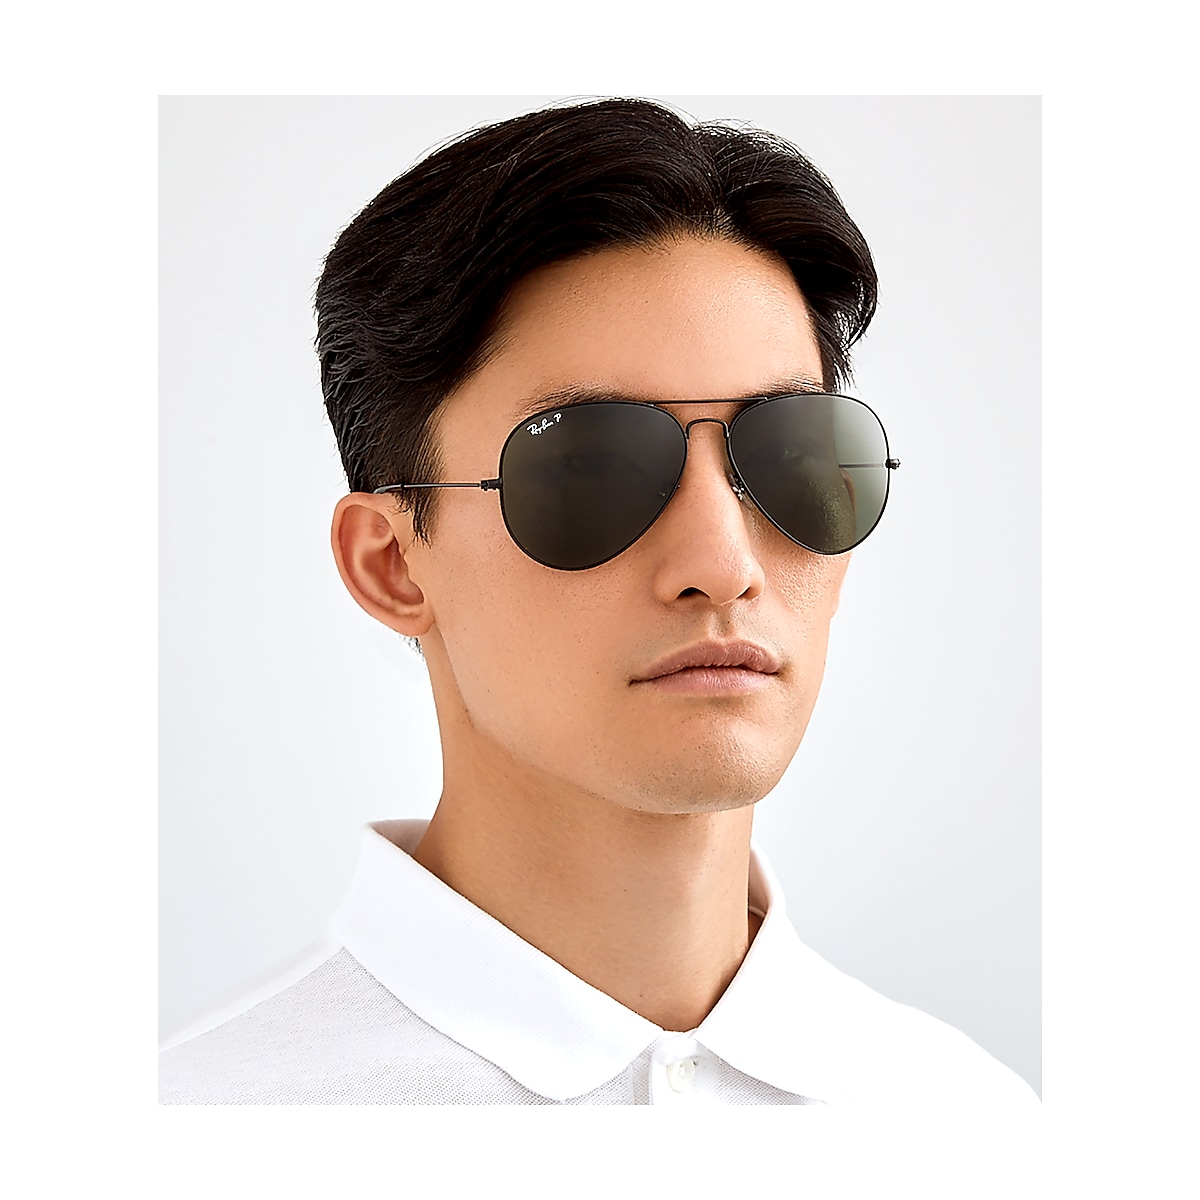 Belofte Guggenheim Museum Onderscheppen Ray-Ban Black Sunglasses | Glasses.com® | Free Shipping